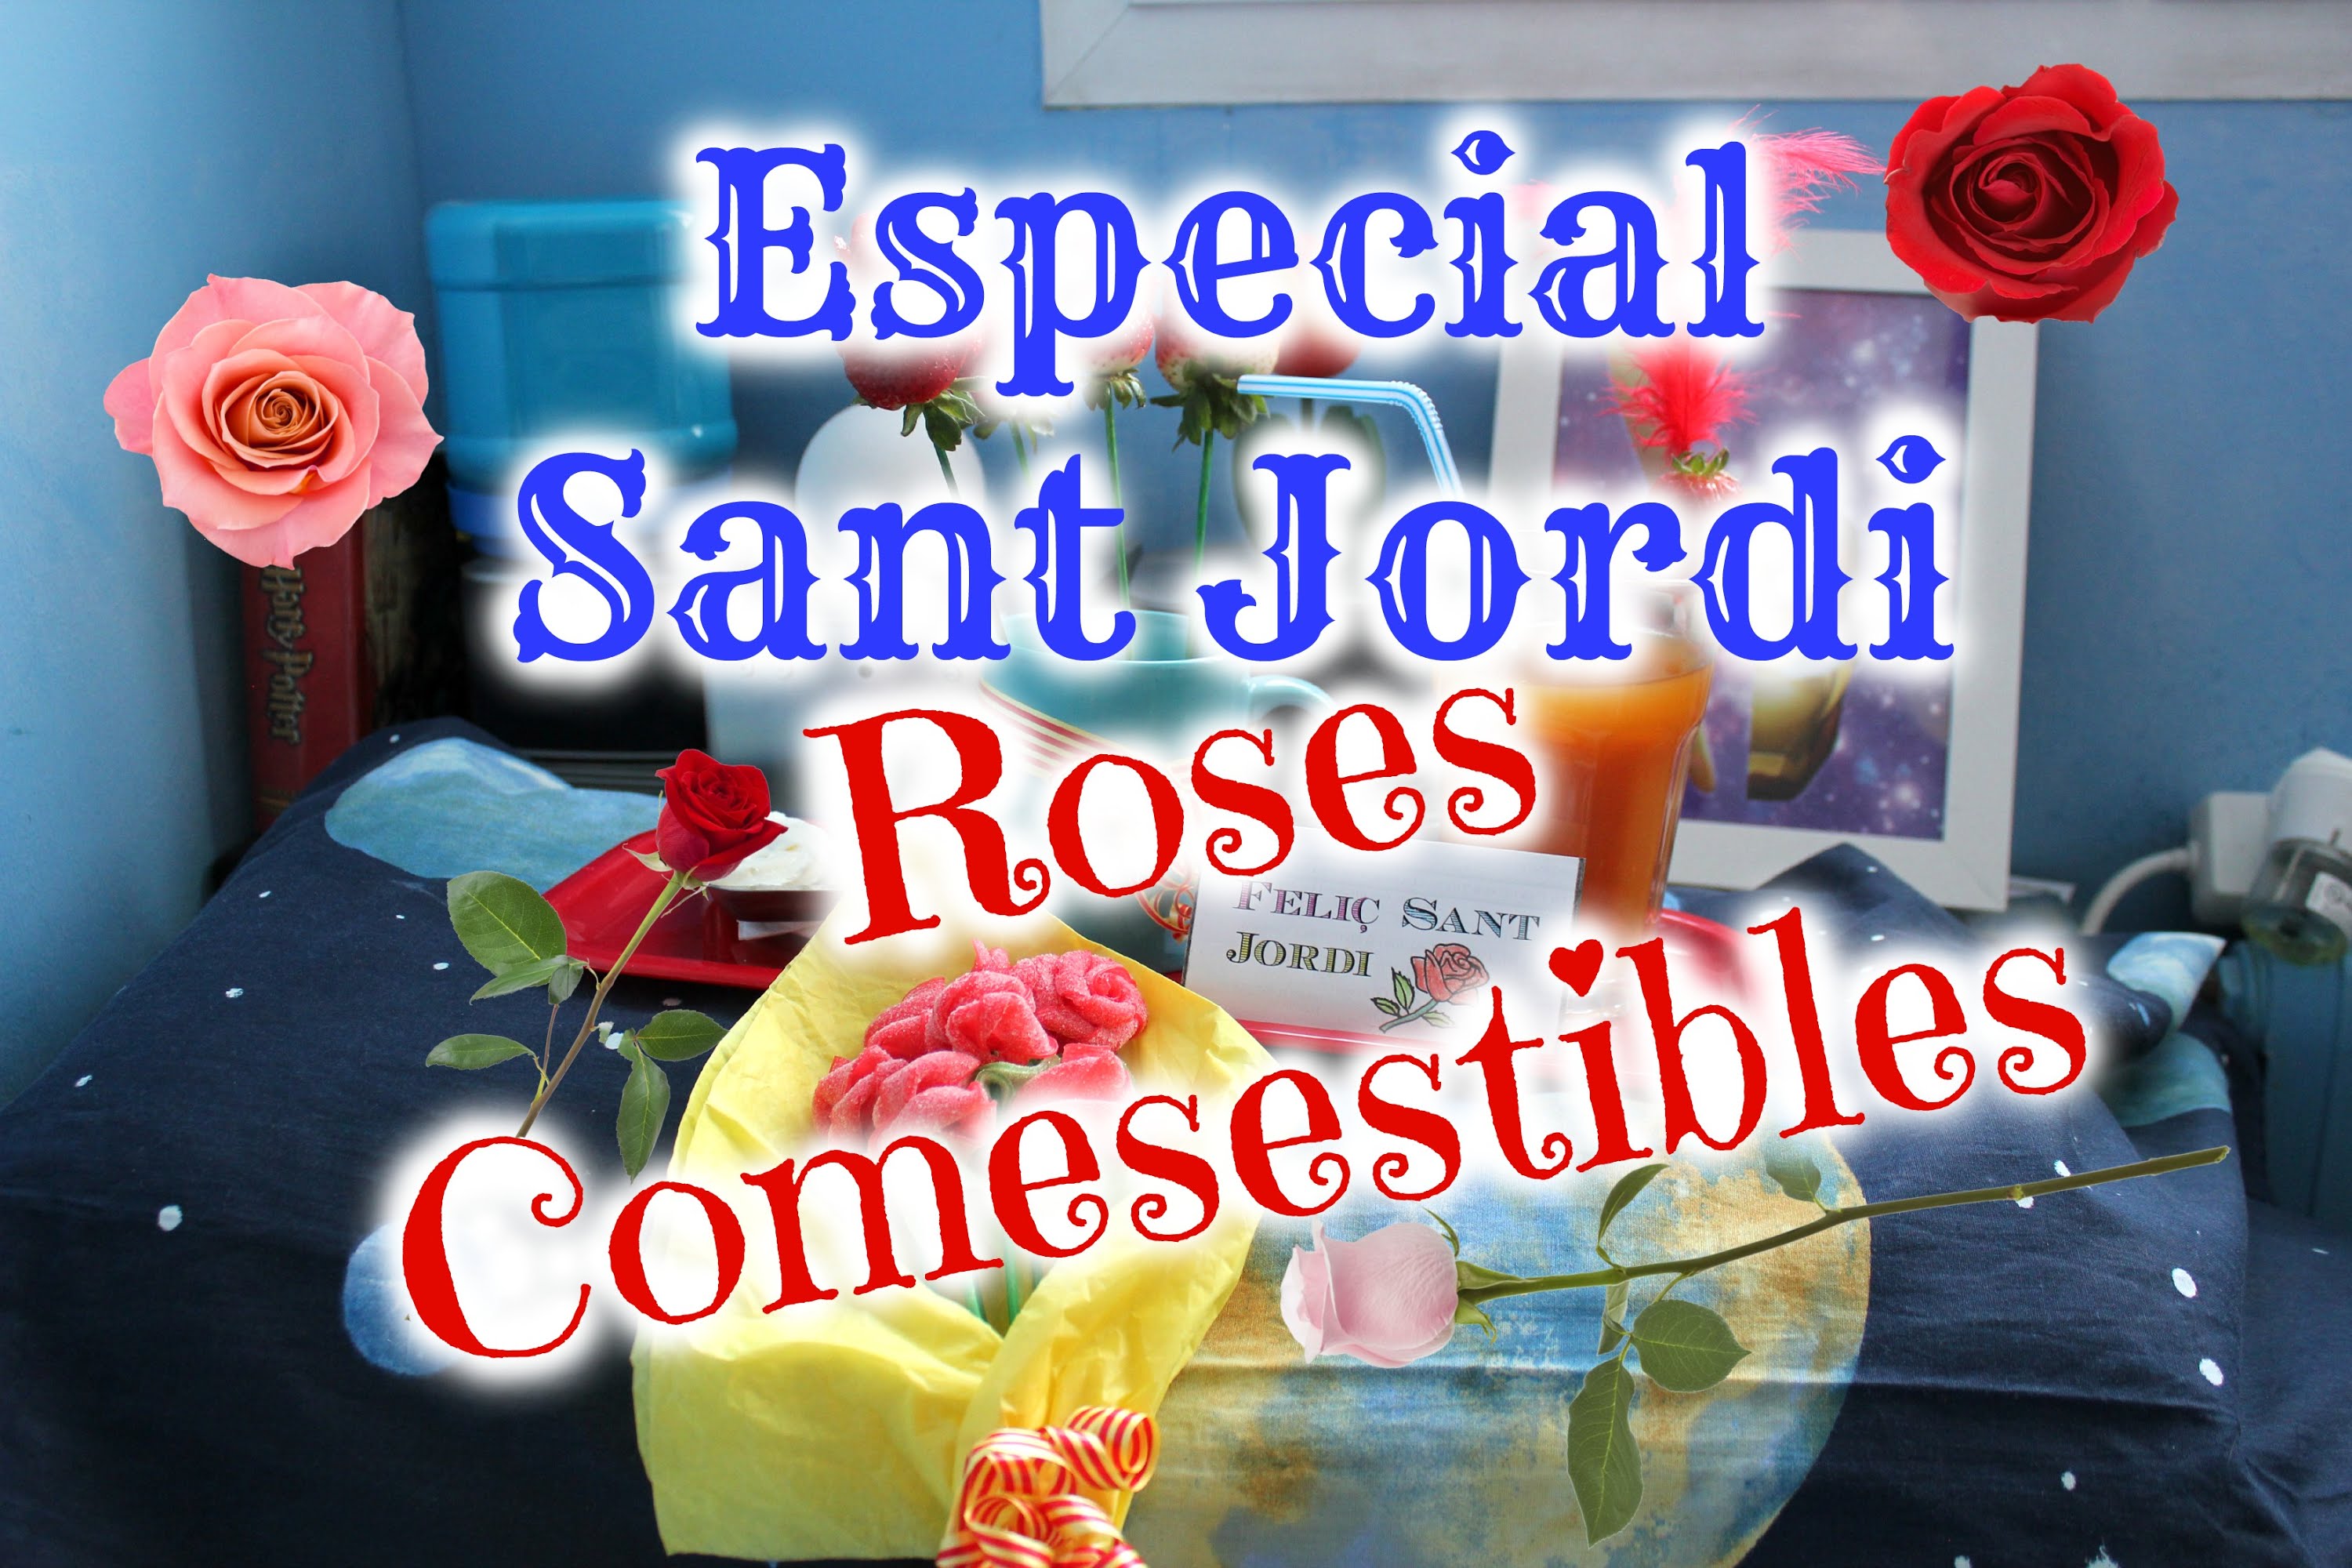 ESPECIAL SANT JORDI: ROSES COMESTIBLES ✿✿ 🌹🌹 de EstarlinaCat